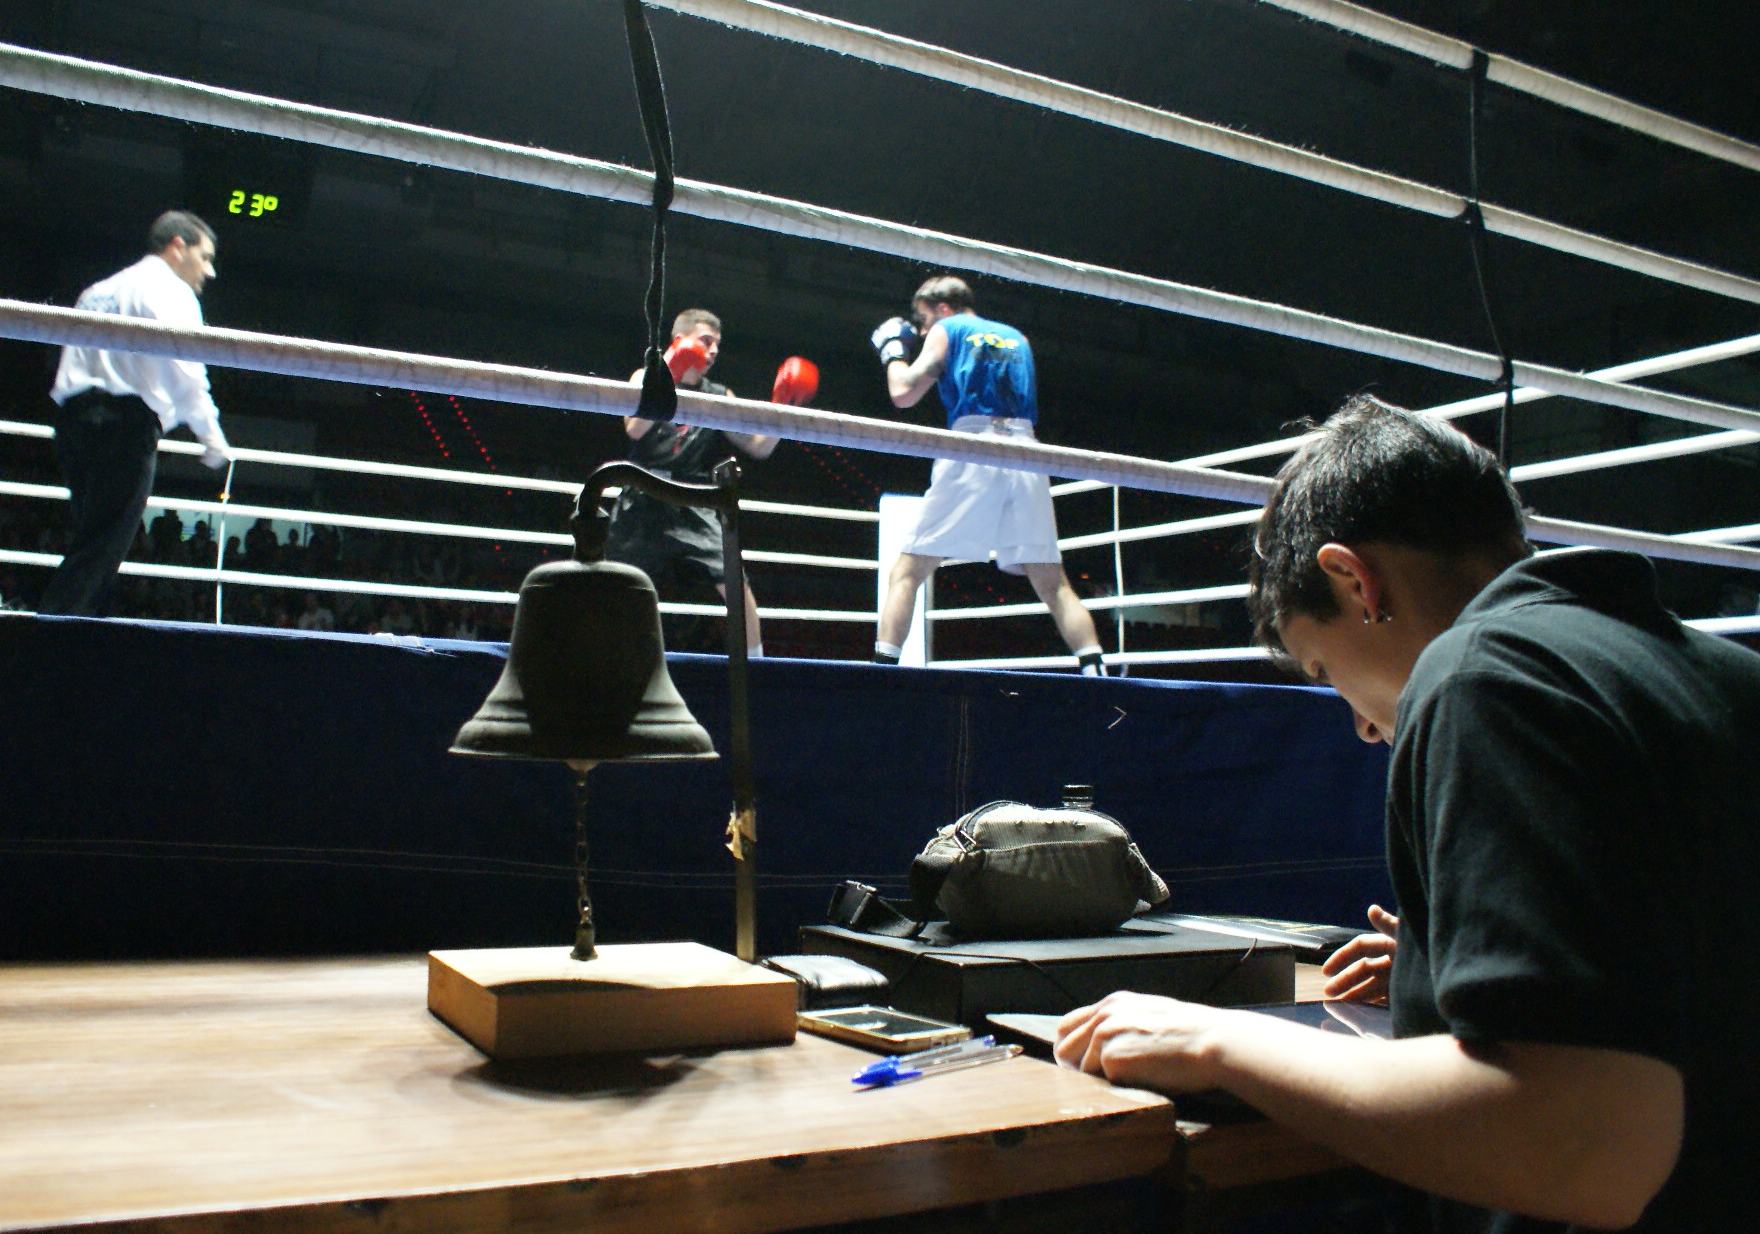 Mesa de federativos. La juez revisa documentación junto a la campana. Al fondo, boxeo, Ibon Larrinaga frente la riojano Miguel Elorza.